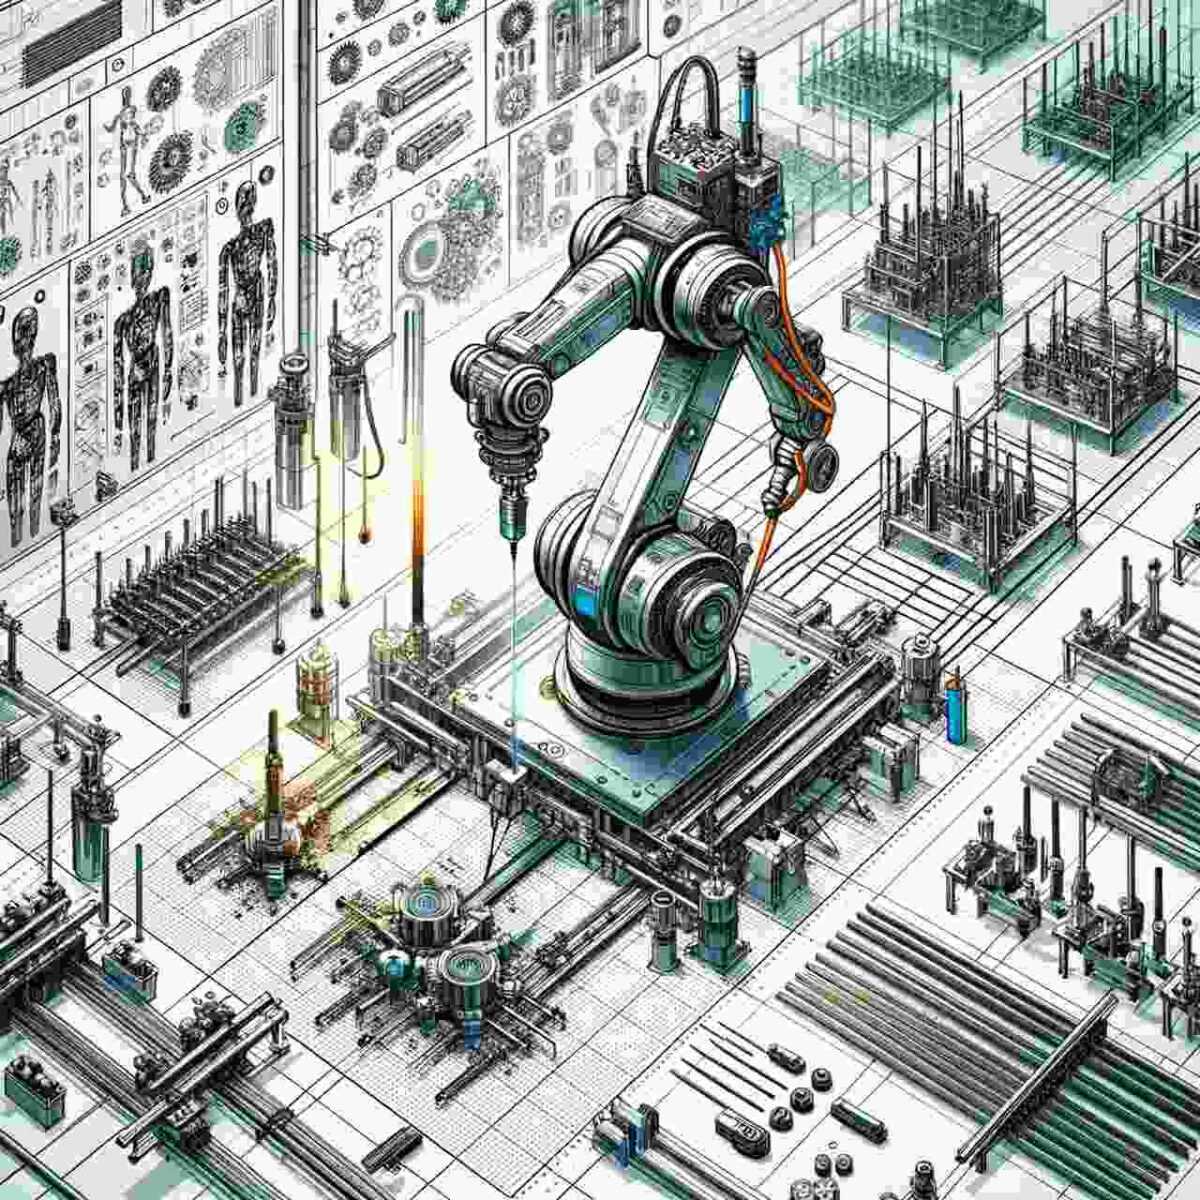 Wektorowe przedstawienie robotów spawalniczych wykonujących precyzyjne spawanie na linii produkcyjnej w przemyśle."